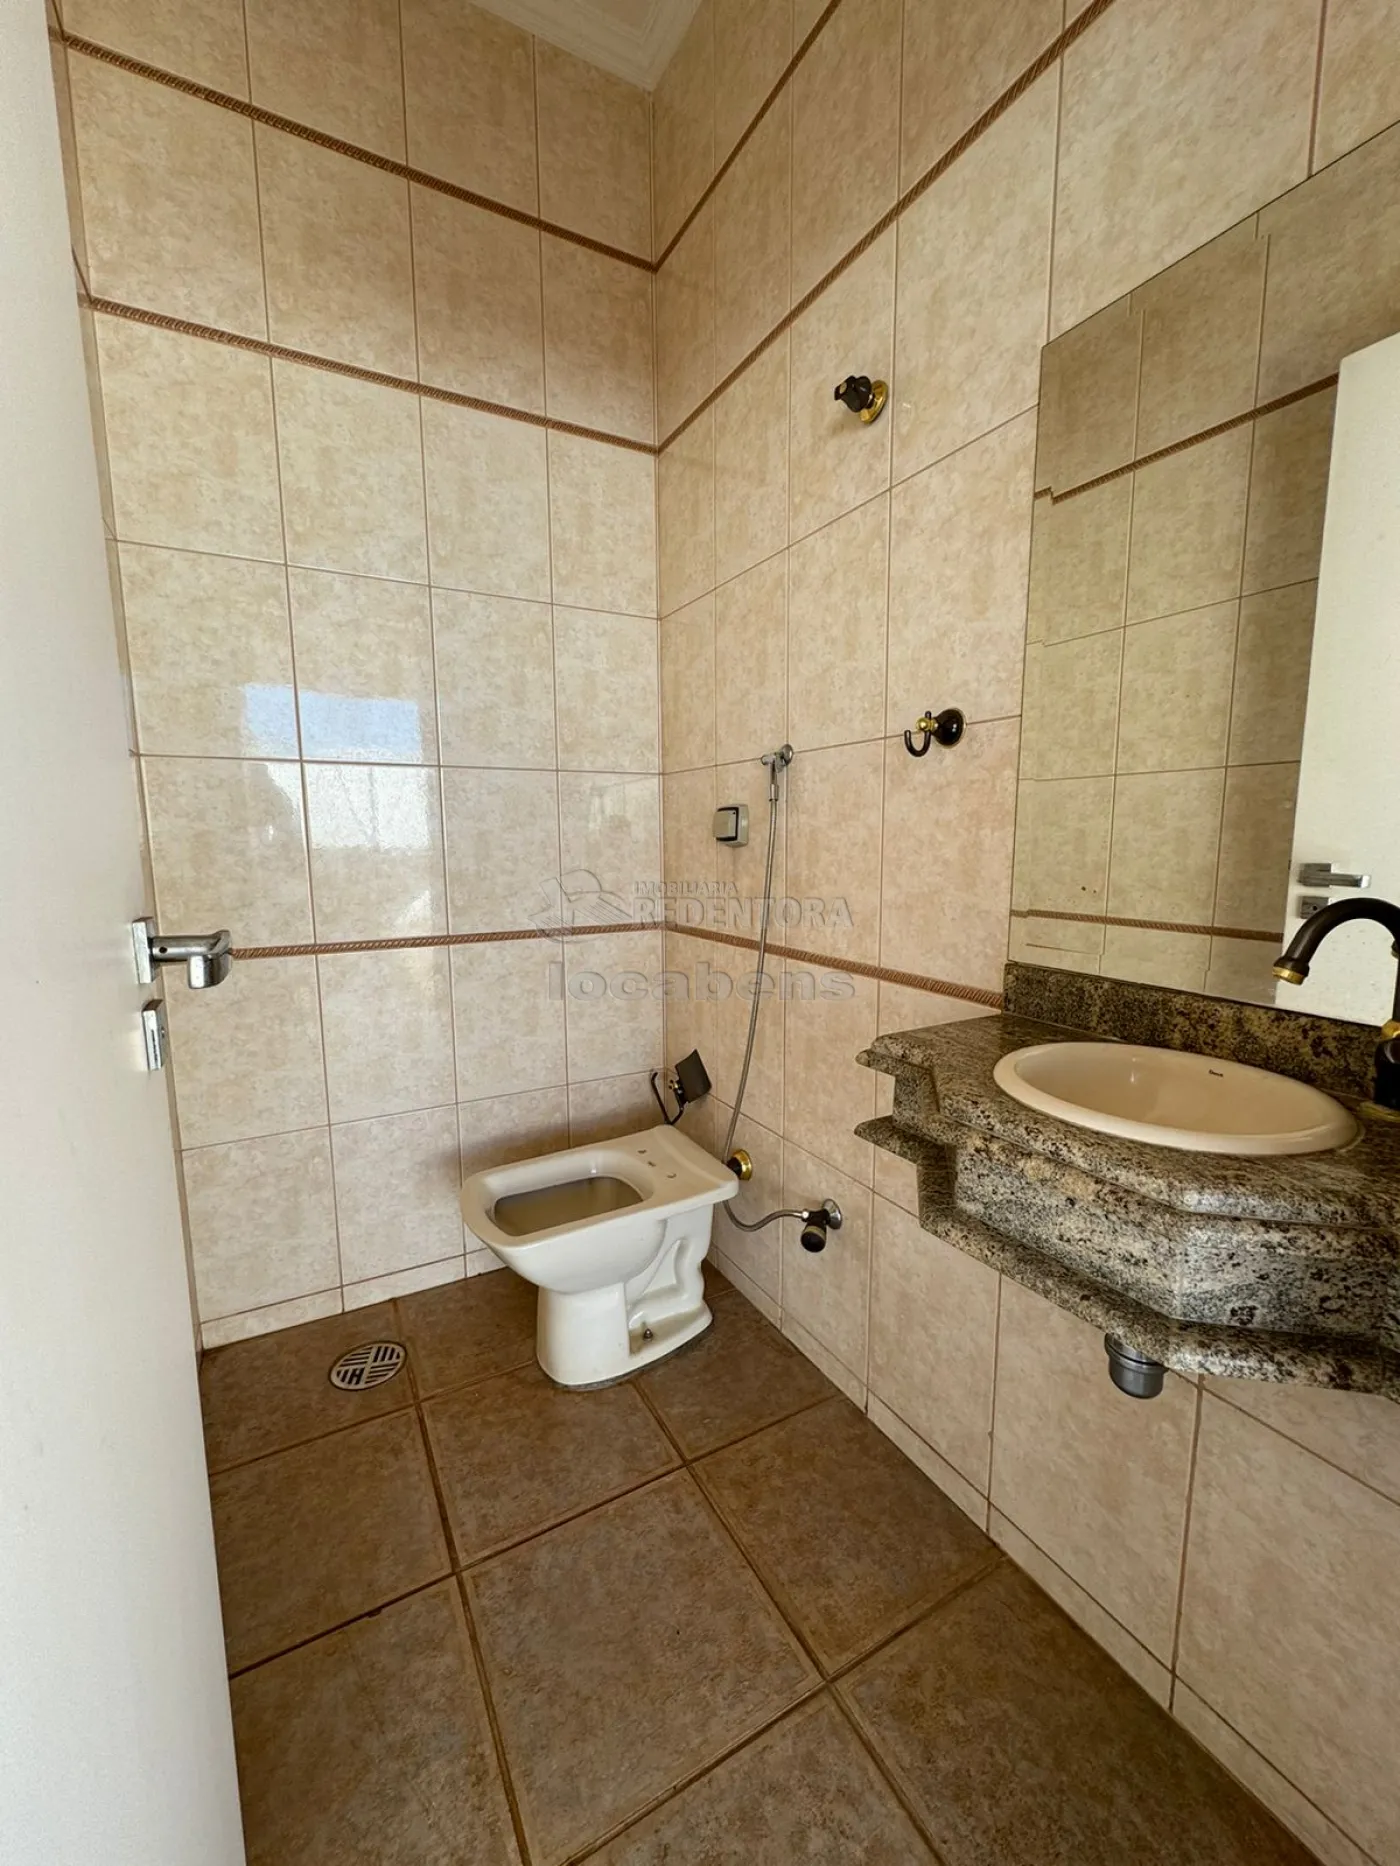 Comprar Casa / Condomínio em São José do Rio Preto R$ 1.600.000,00 - Foto 9